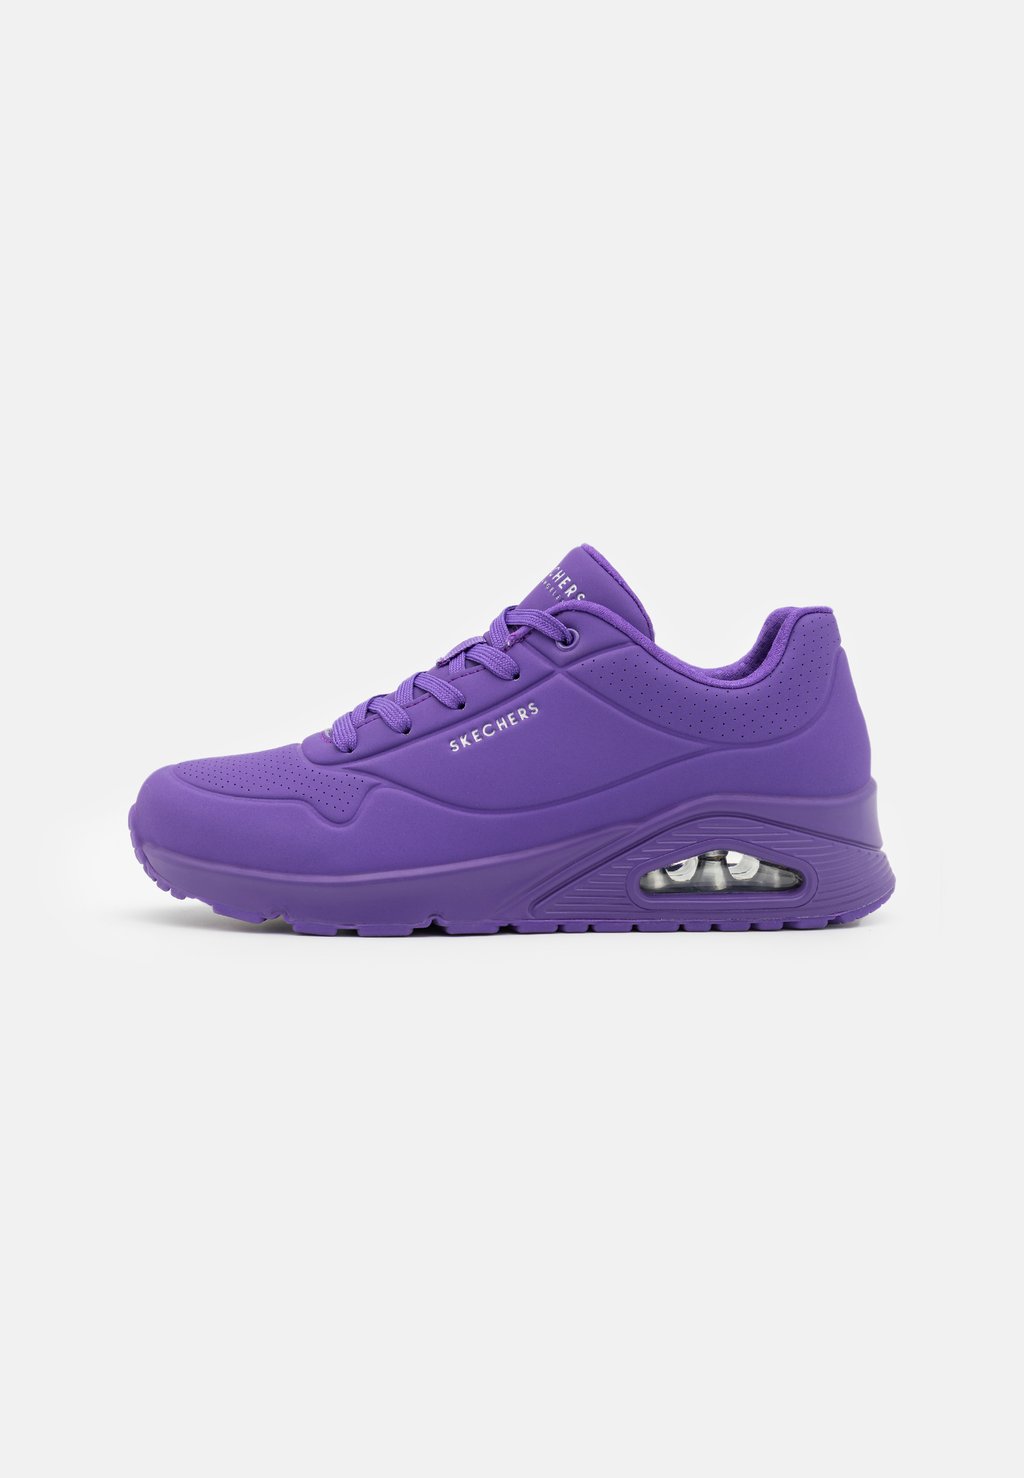 Низкие кроссовки Uno Skechers Sport, цвет lilac низкие кроссовки uno skechers sport цвет olive durabuck trim